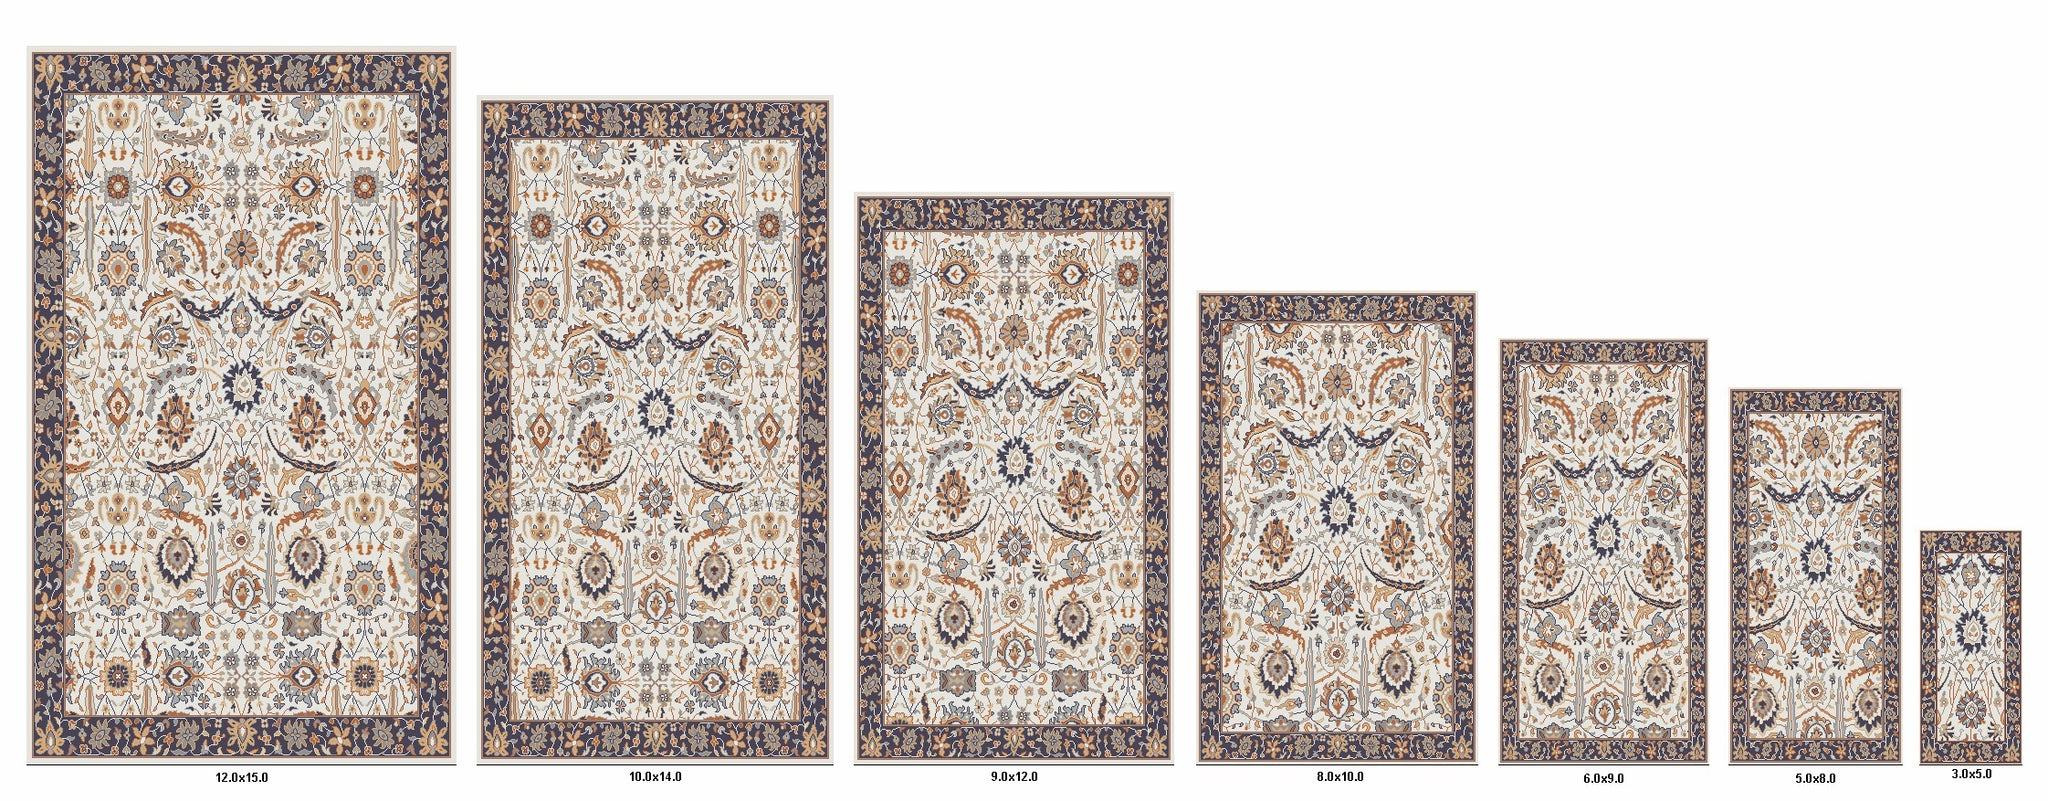 2x3 rug size comparison